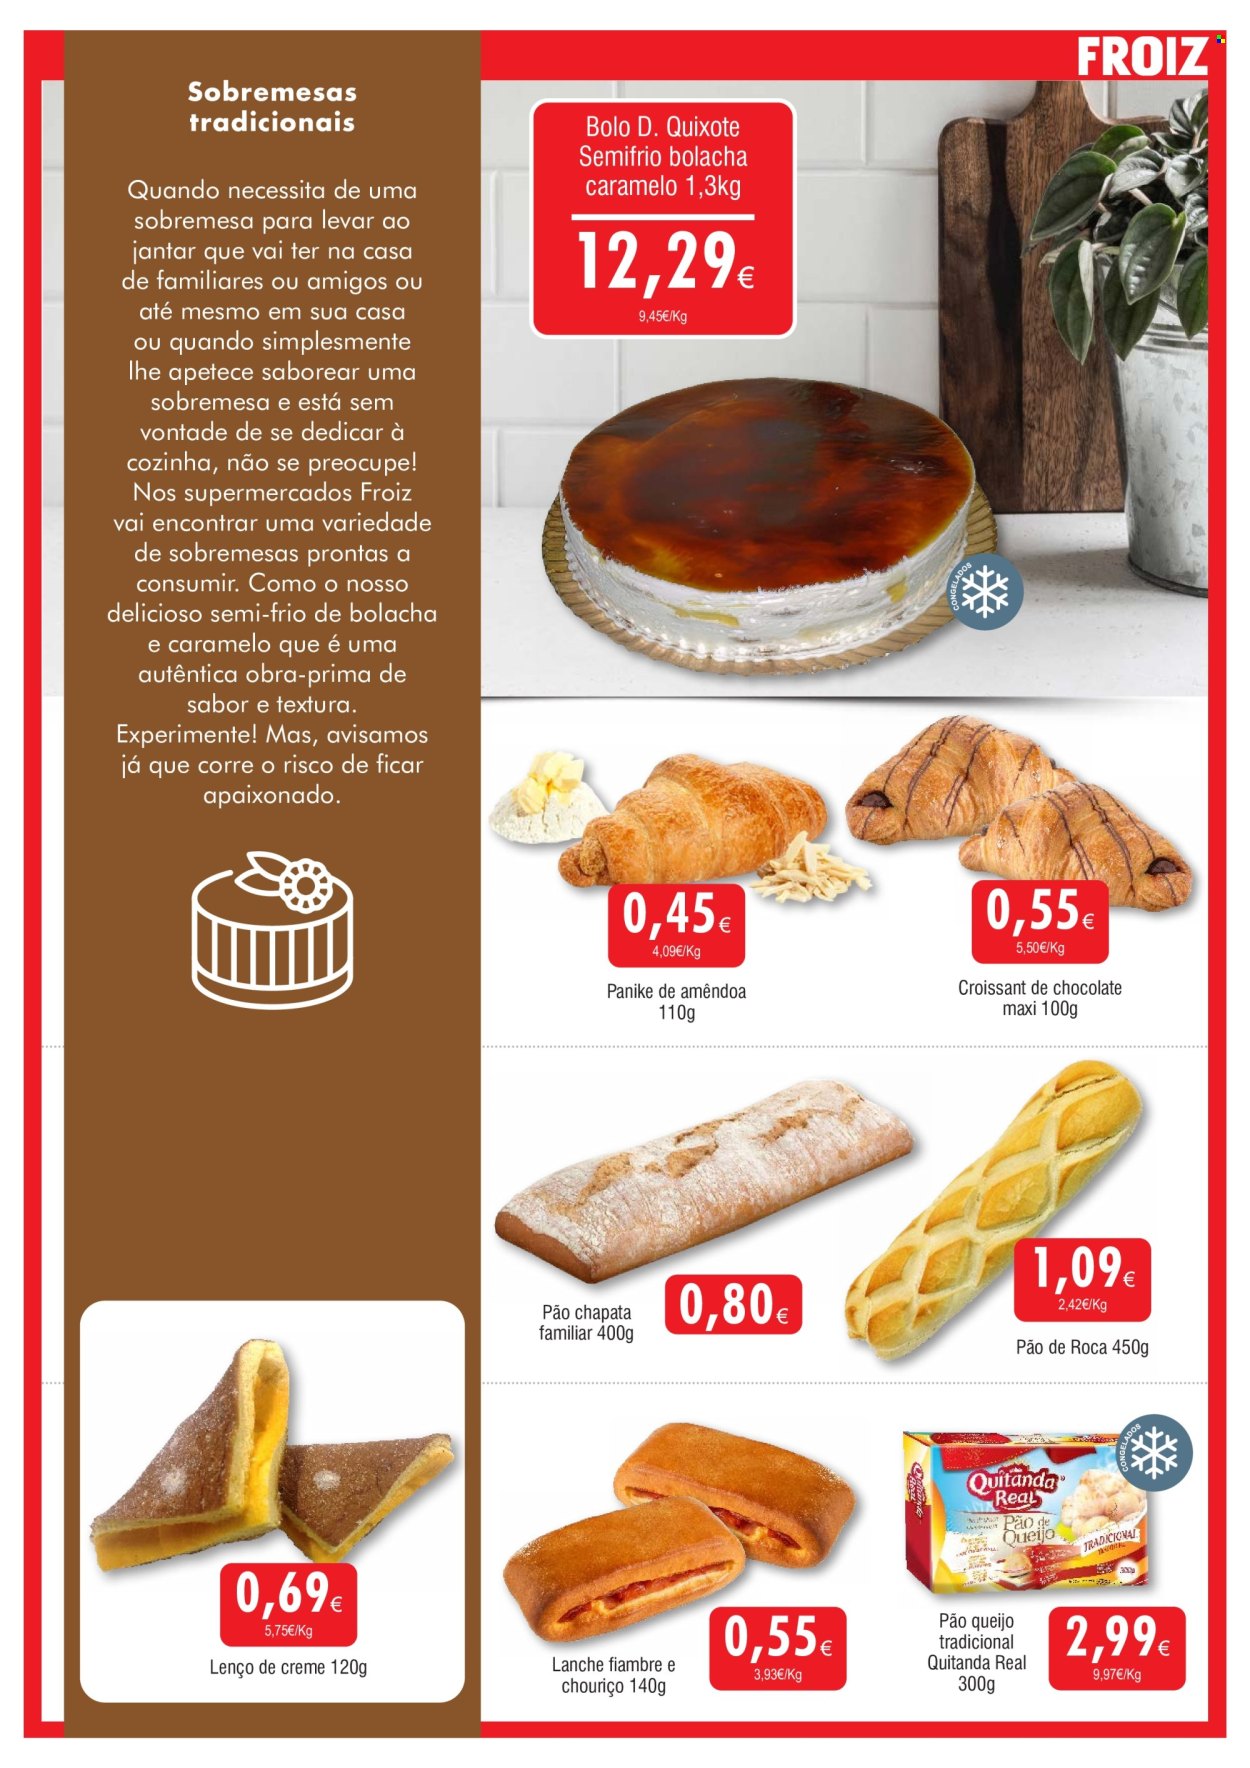 thumbnail - Folheto Froiz - 23.4.2024 - 8.5.2024 - Produtos em promoção - pão de queijo, pão, pastelaria, bolo, croissant, panike, lenço, creme. Página 9.